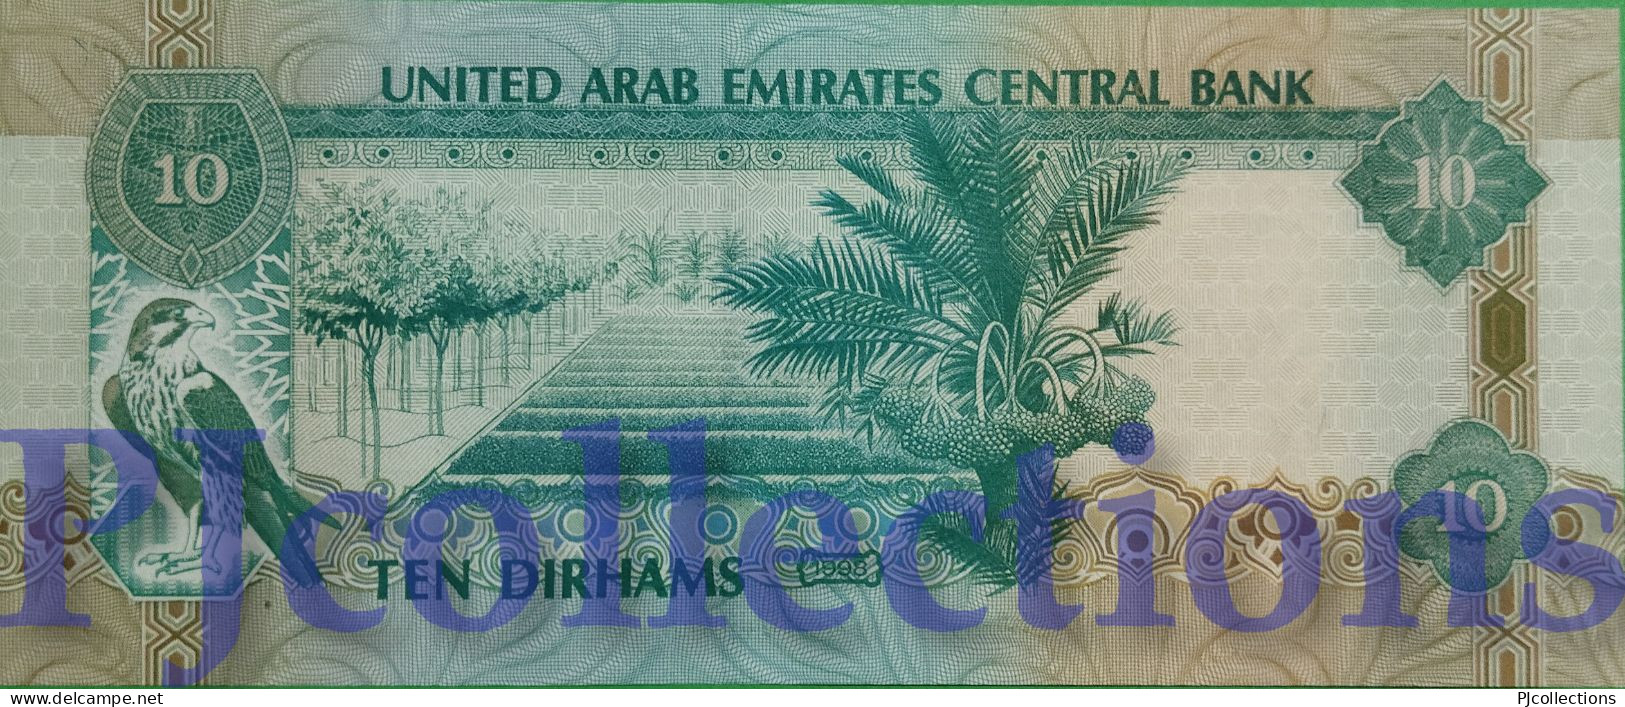 UNITED ARAB EMIRATES 10 DIRHAMS 1998 PICK 20a AU/UNC - Emiratos Arabes Unidos